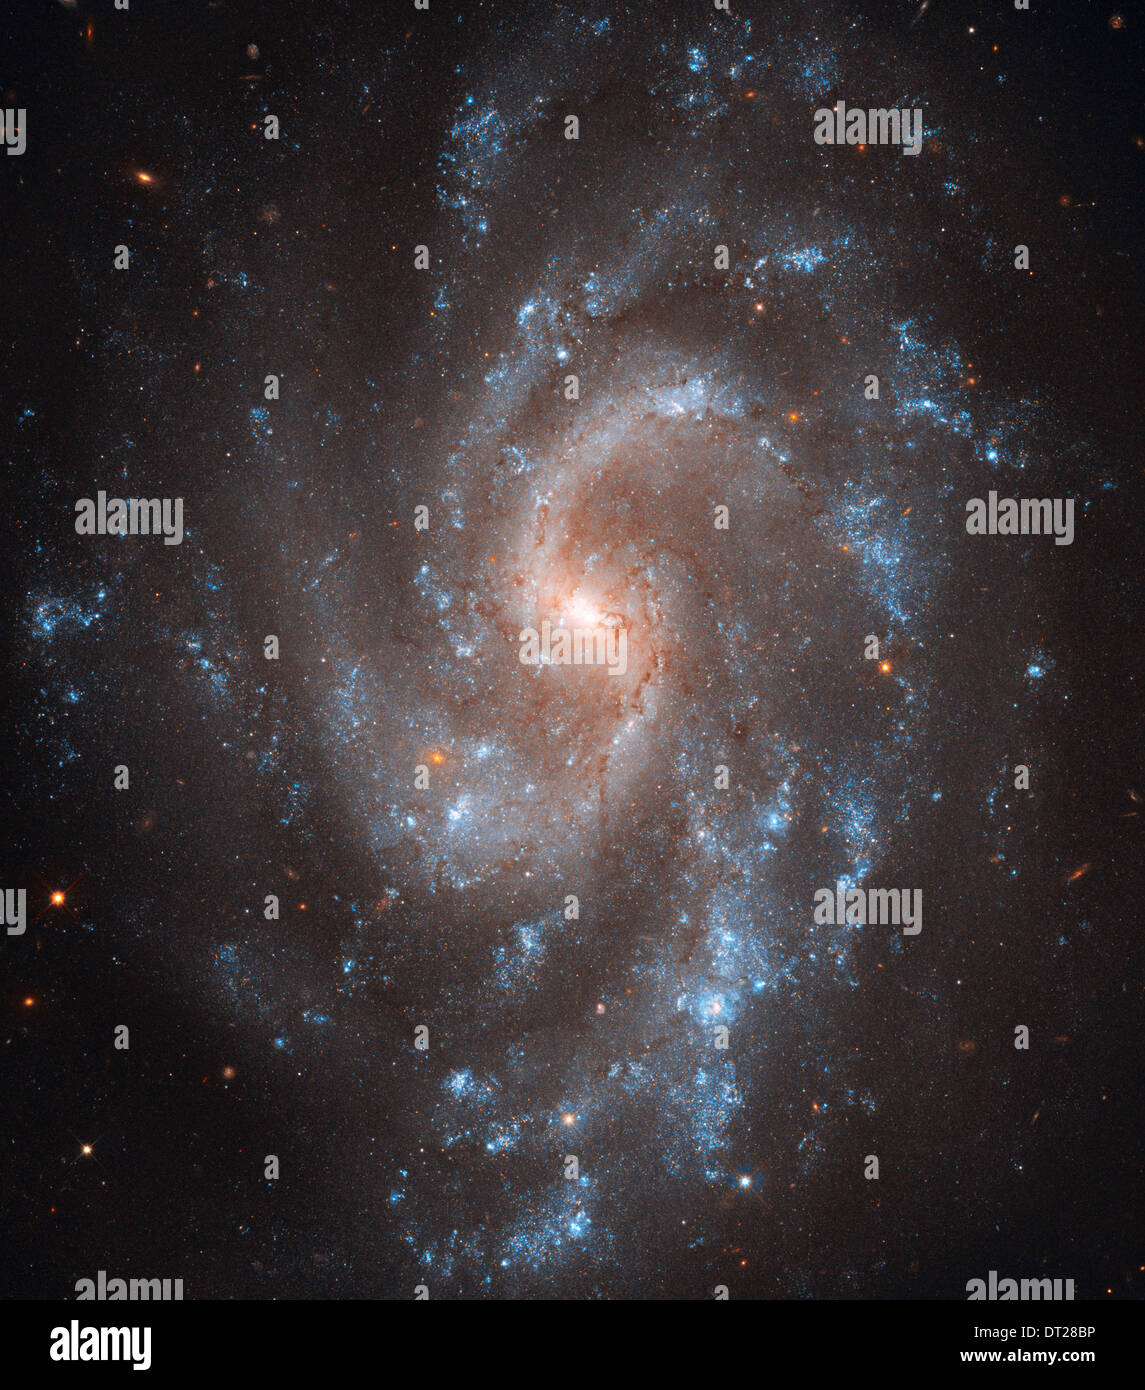 Il brillante, bagliore blu di giovani stelle tracce il grazioso i bracci di spirale della galassia NGC 5584 in questo telescopio spaziale Hubble immagine. Foto Stock